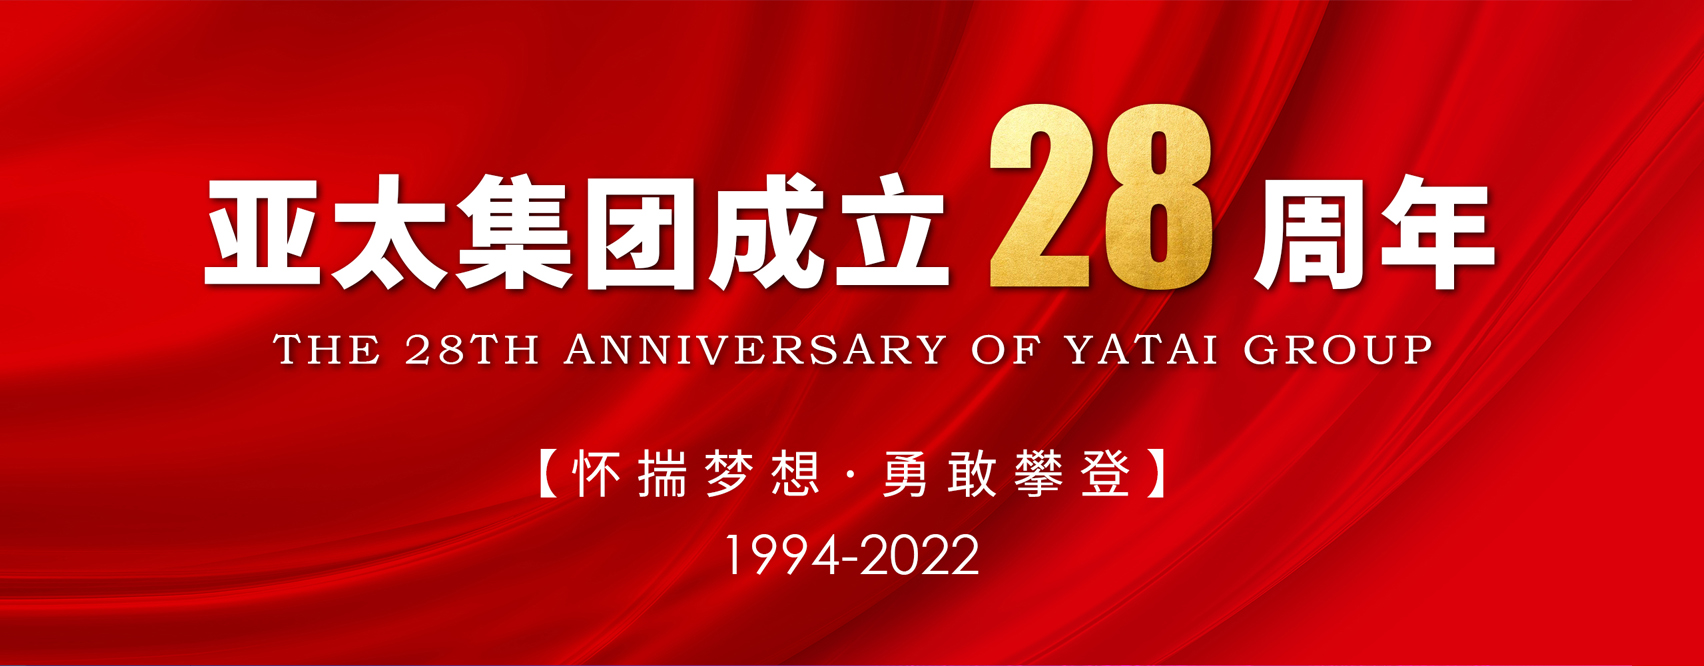 亚太集团成立28周年